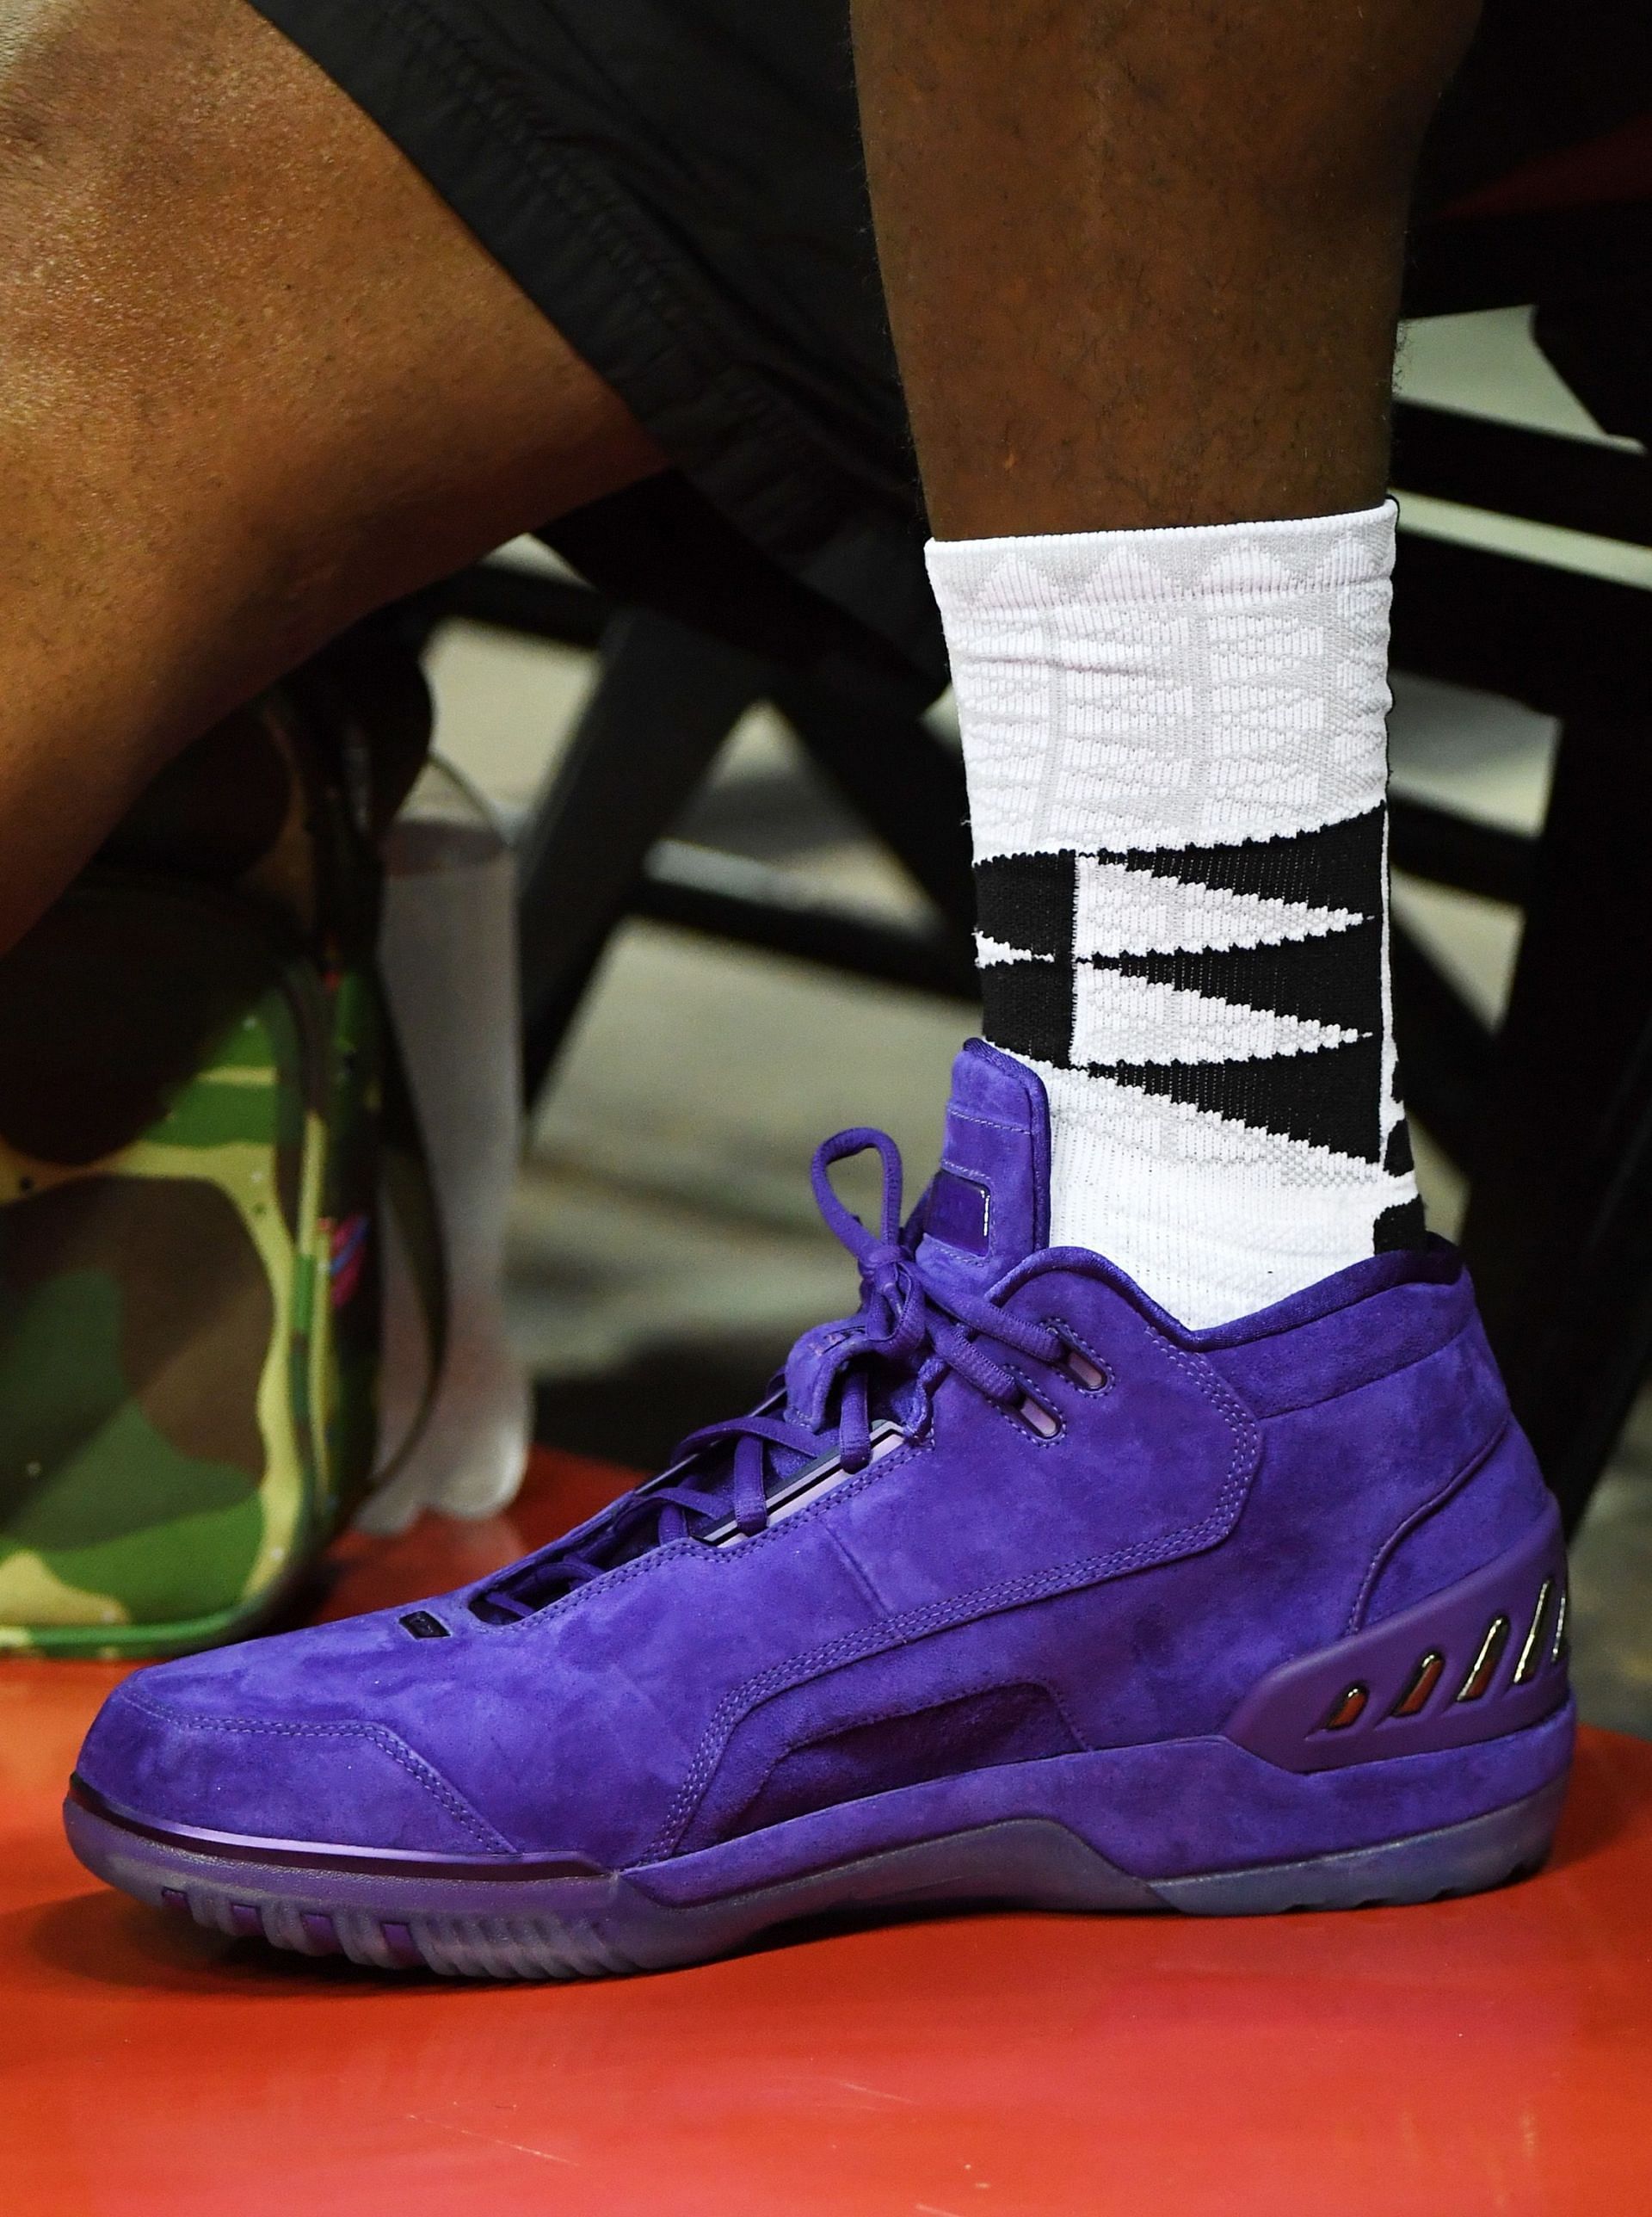 LeBron James of the Los Angeles Lakers wears purple suede Nike Air Zoom Generation sneakers